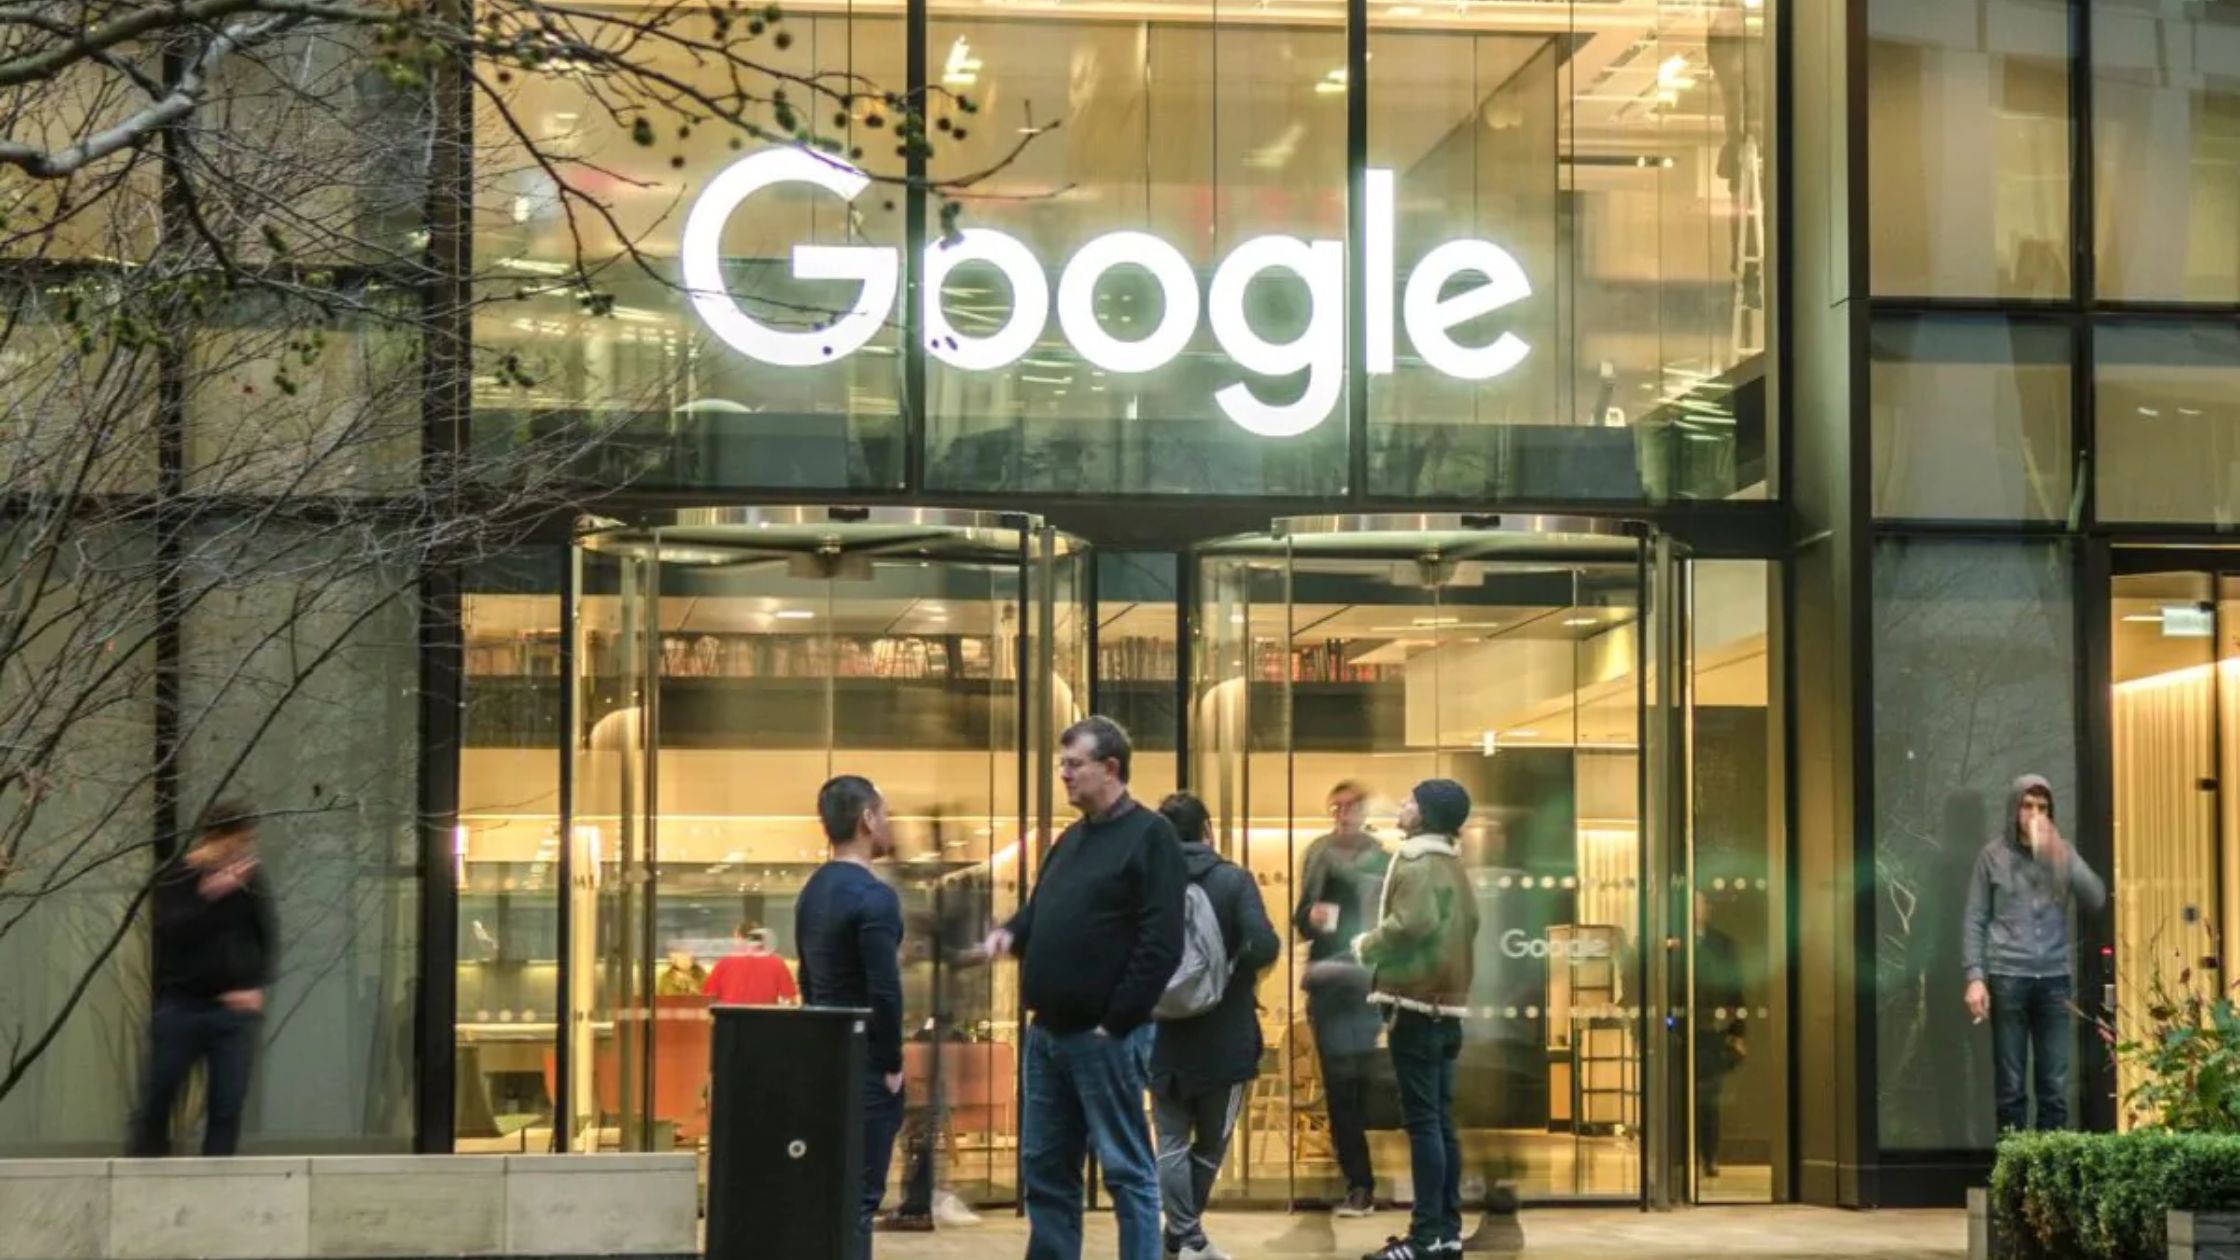 Google Layoffs - Google Cuts 12,000 Jobs as Layoffs Spread